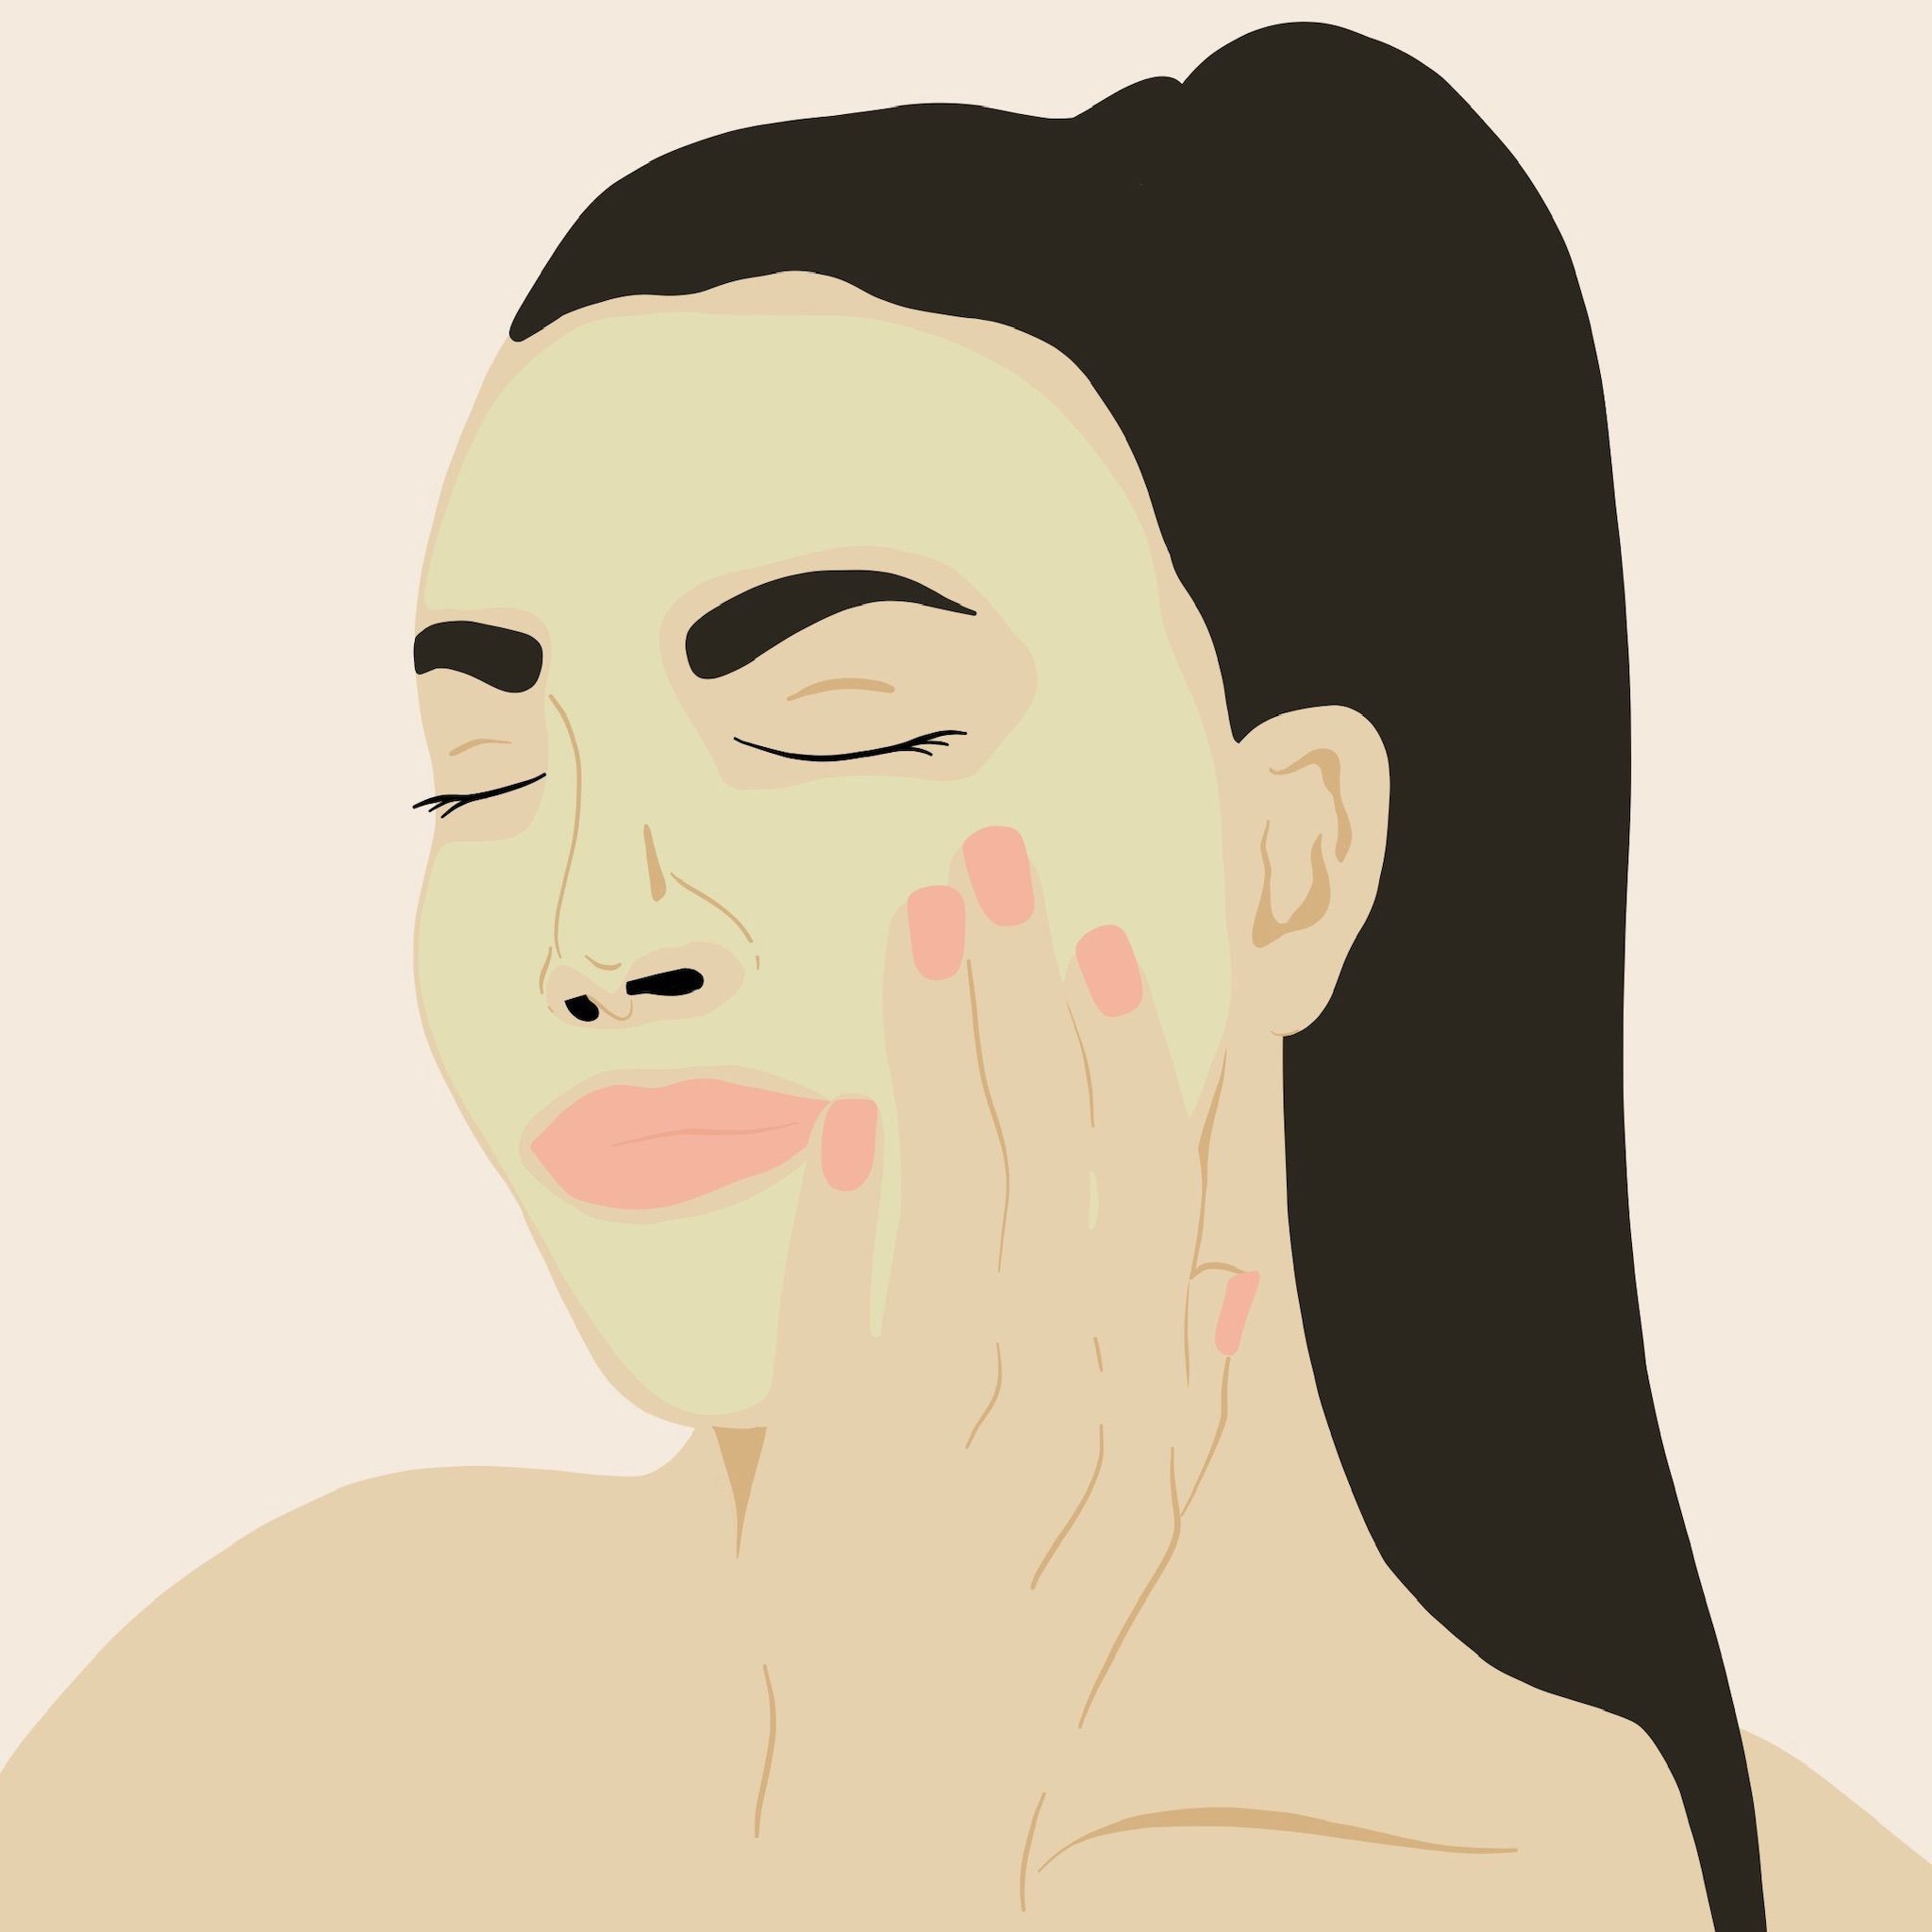 12 beauty Mask illustration ideas